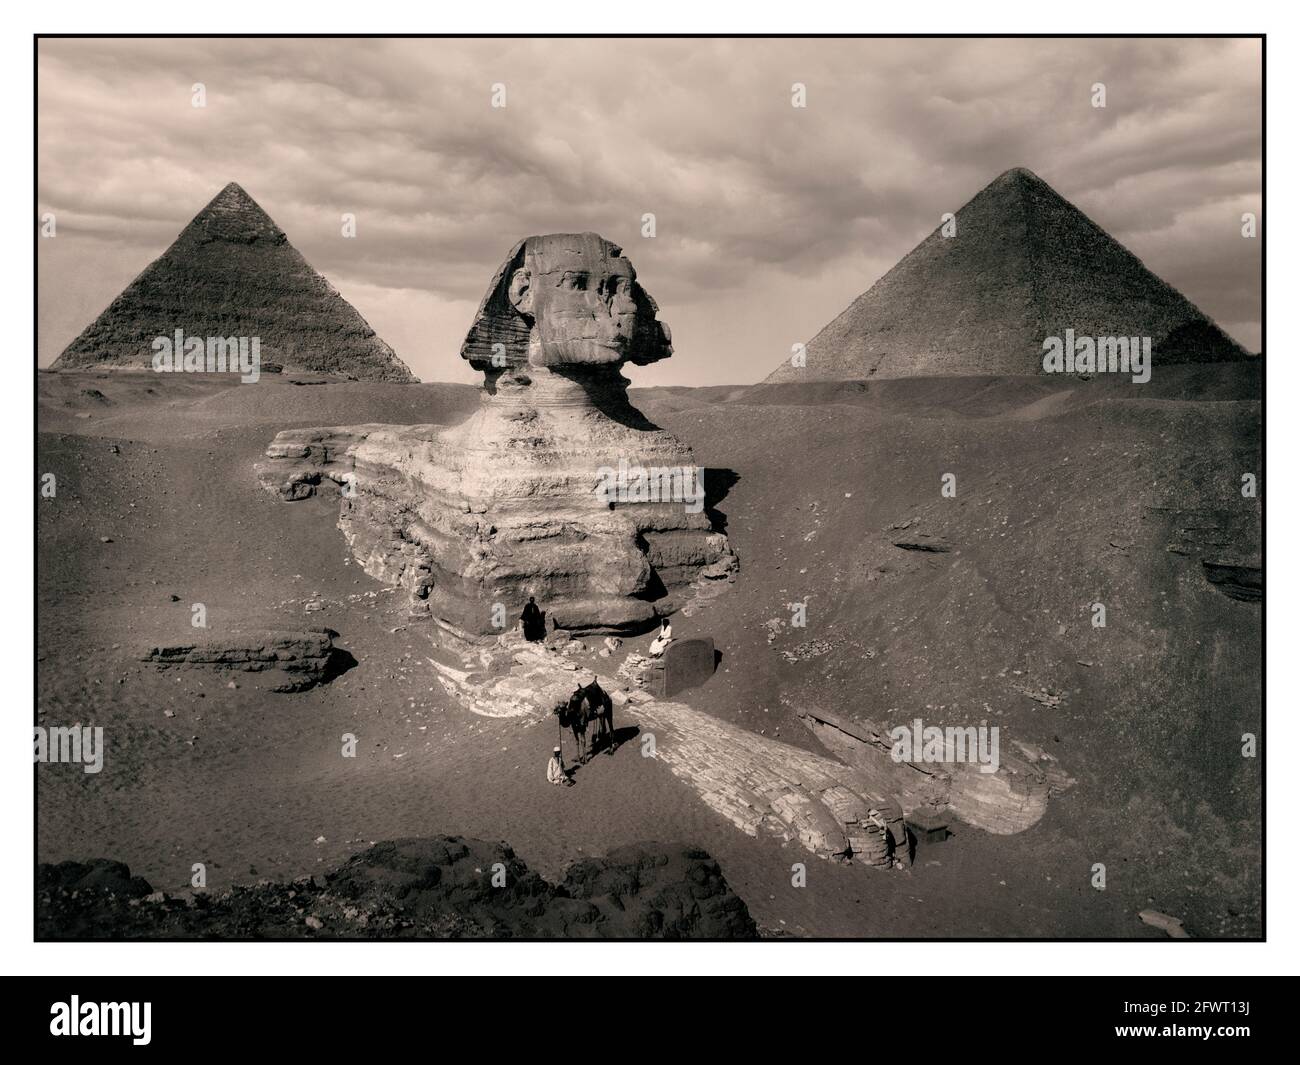 GIZEH 1880 pyramide Vintage Gizeh. Pyramide de Khafre et Sphinx 1880 image sépia de Gizeh. CA. 2575 BC-ca. 2465 BC (Pyramide et Sphinx) Pyramides de Gizeh, Muḩāfaz̧at Maţrūḩ, Egypte Afrique Egyptien Egyptien antique, 4e dynastie Grand Sphinx de Gizeh, communément appelé le Sphinx de Gizeh ou juste le Sphinx, est une statue calcaire d'un sphinx inclinable, Créature mythique avec le corps d'un lion et la tête d'un humain directement d'ouest en est, elle se dresse sur le plateau de Giza, sur la rive ouest du Nil à Gizeh, en Égypte. Banque D'Images